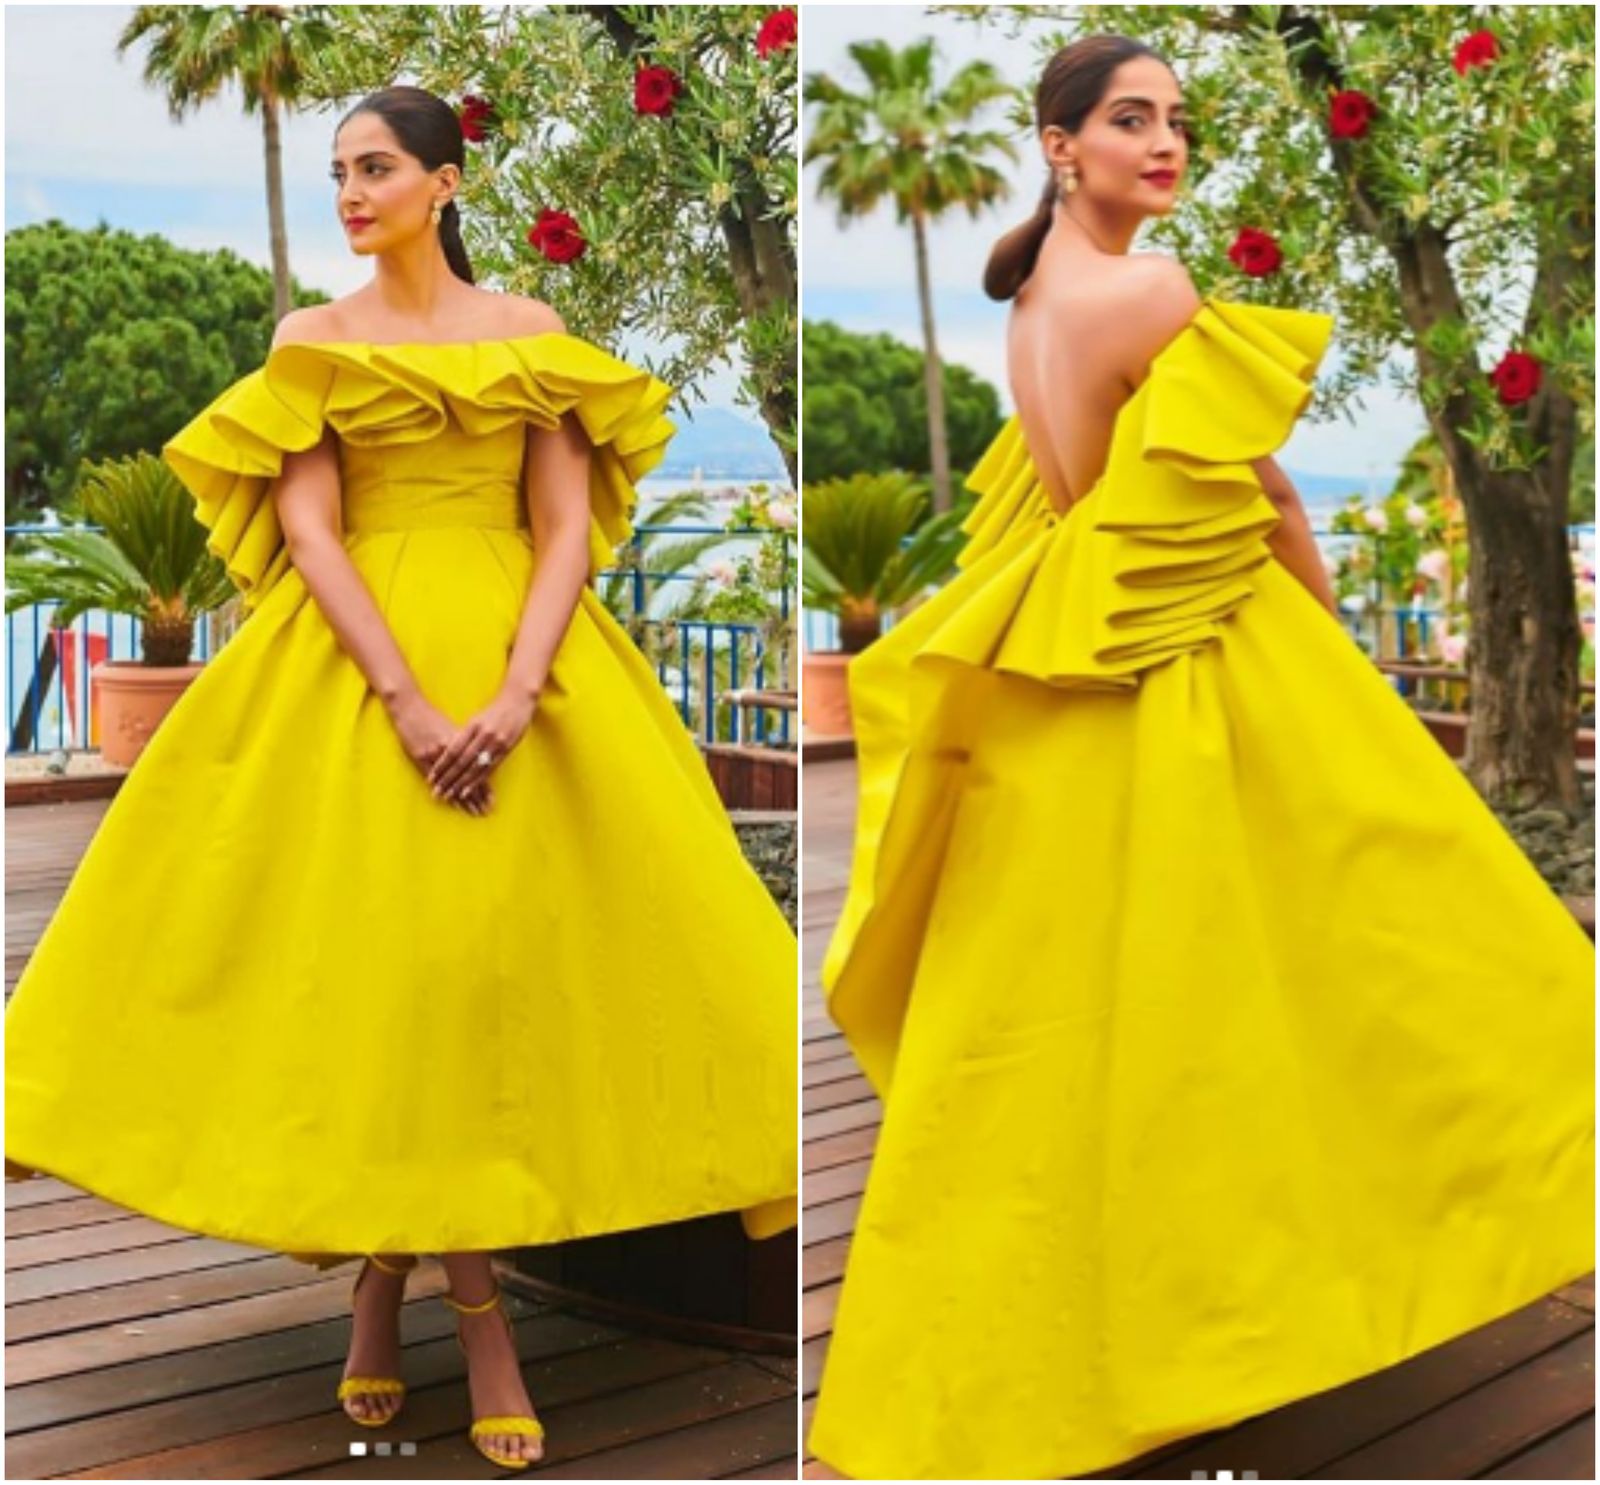 Cannes 2019: अपने नए लुक में सबसे खूबसूरत लग रही हैं सोनम कपूर !